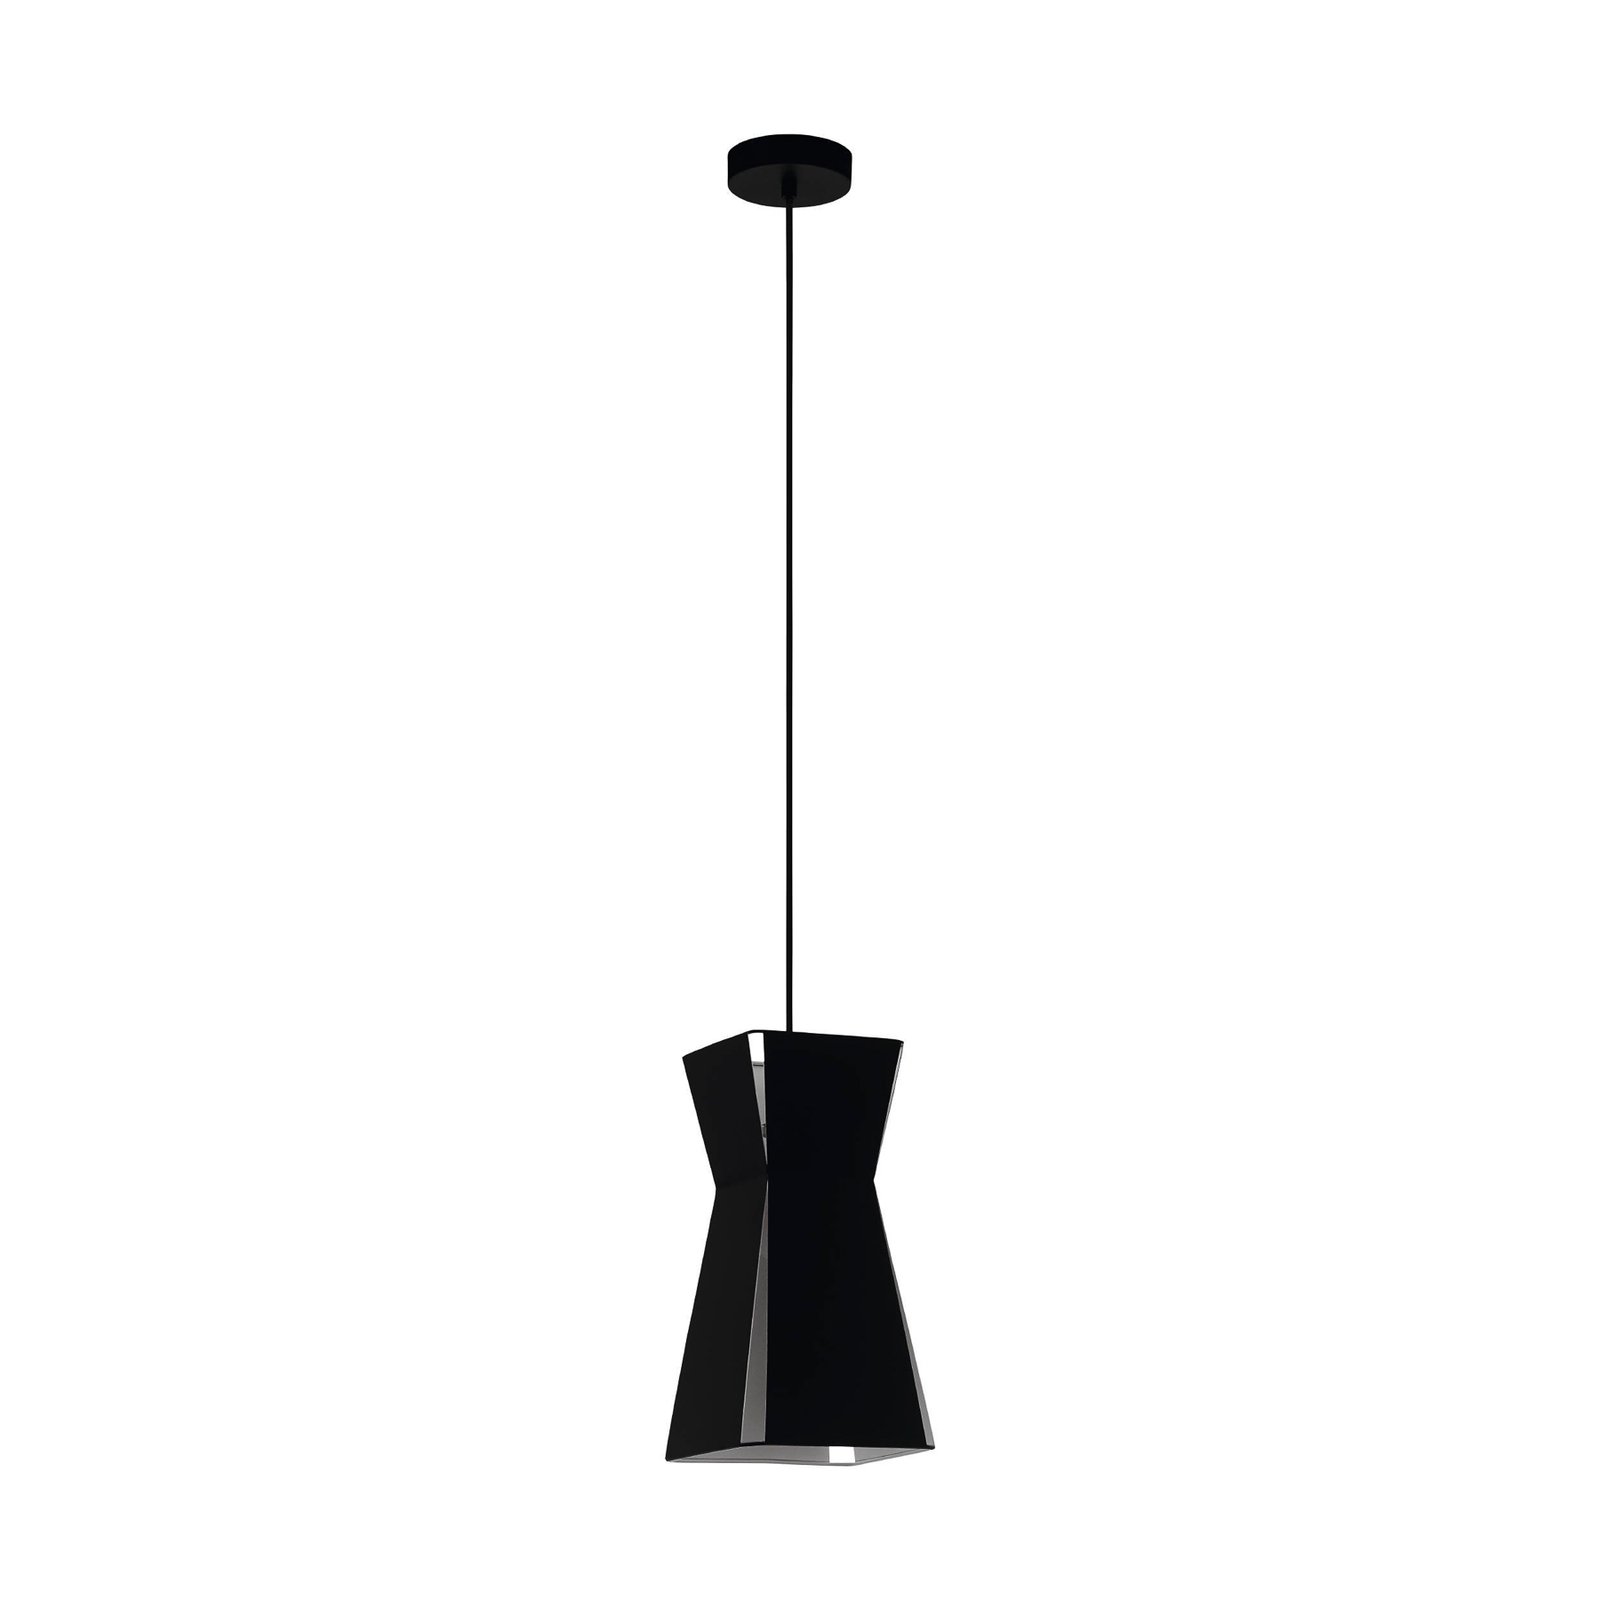 Valecrosia hanging light, black, 18 cm x 18 cm